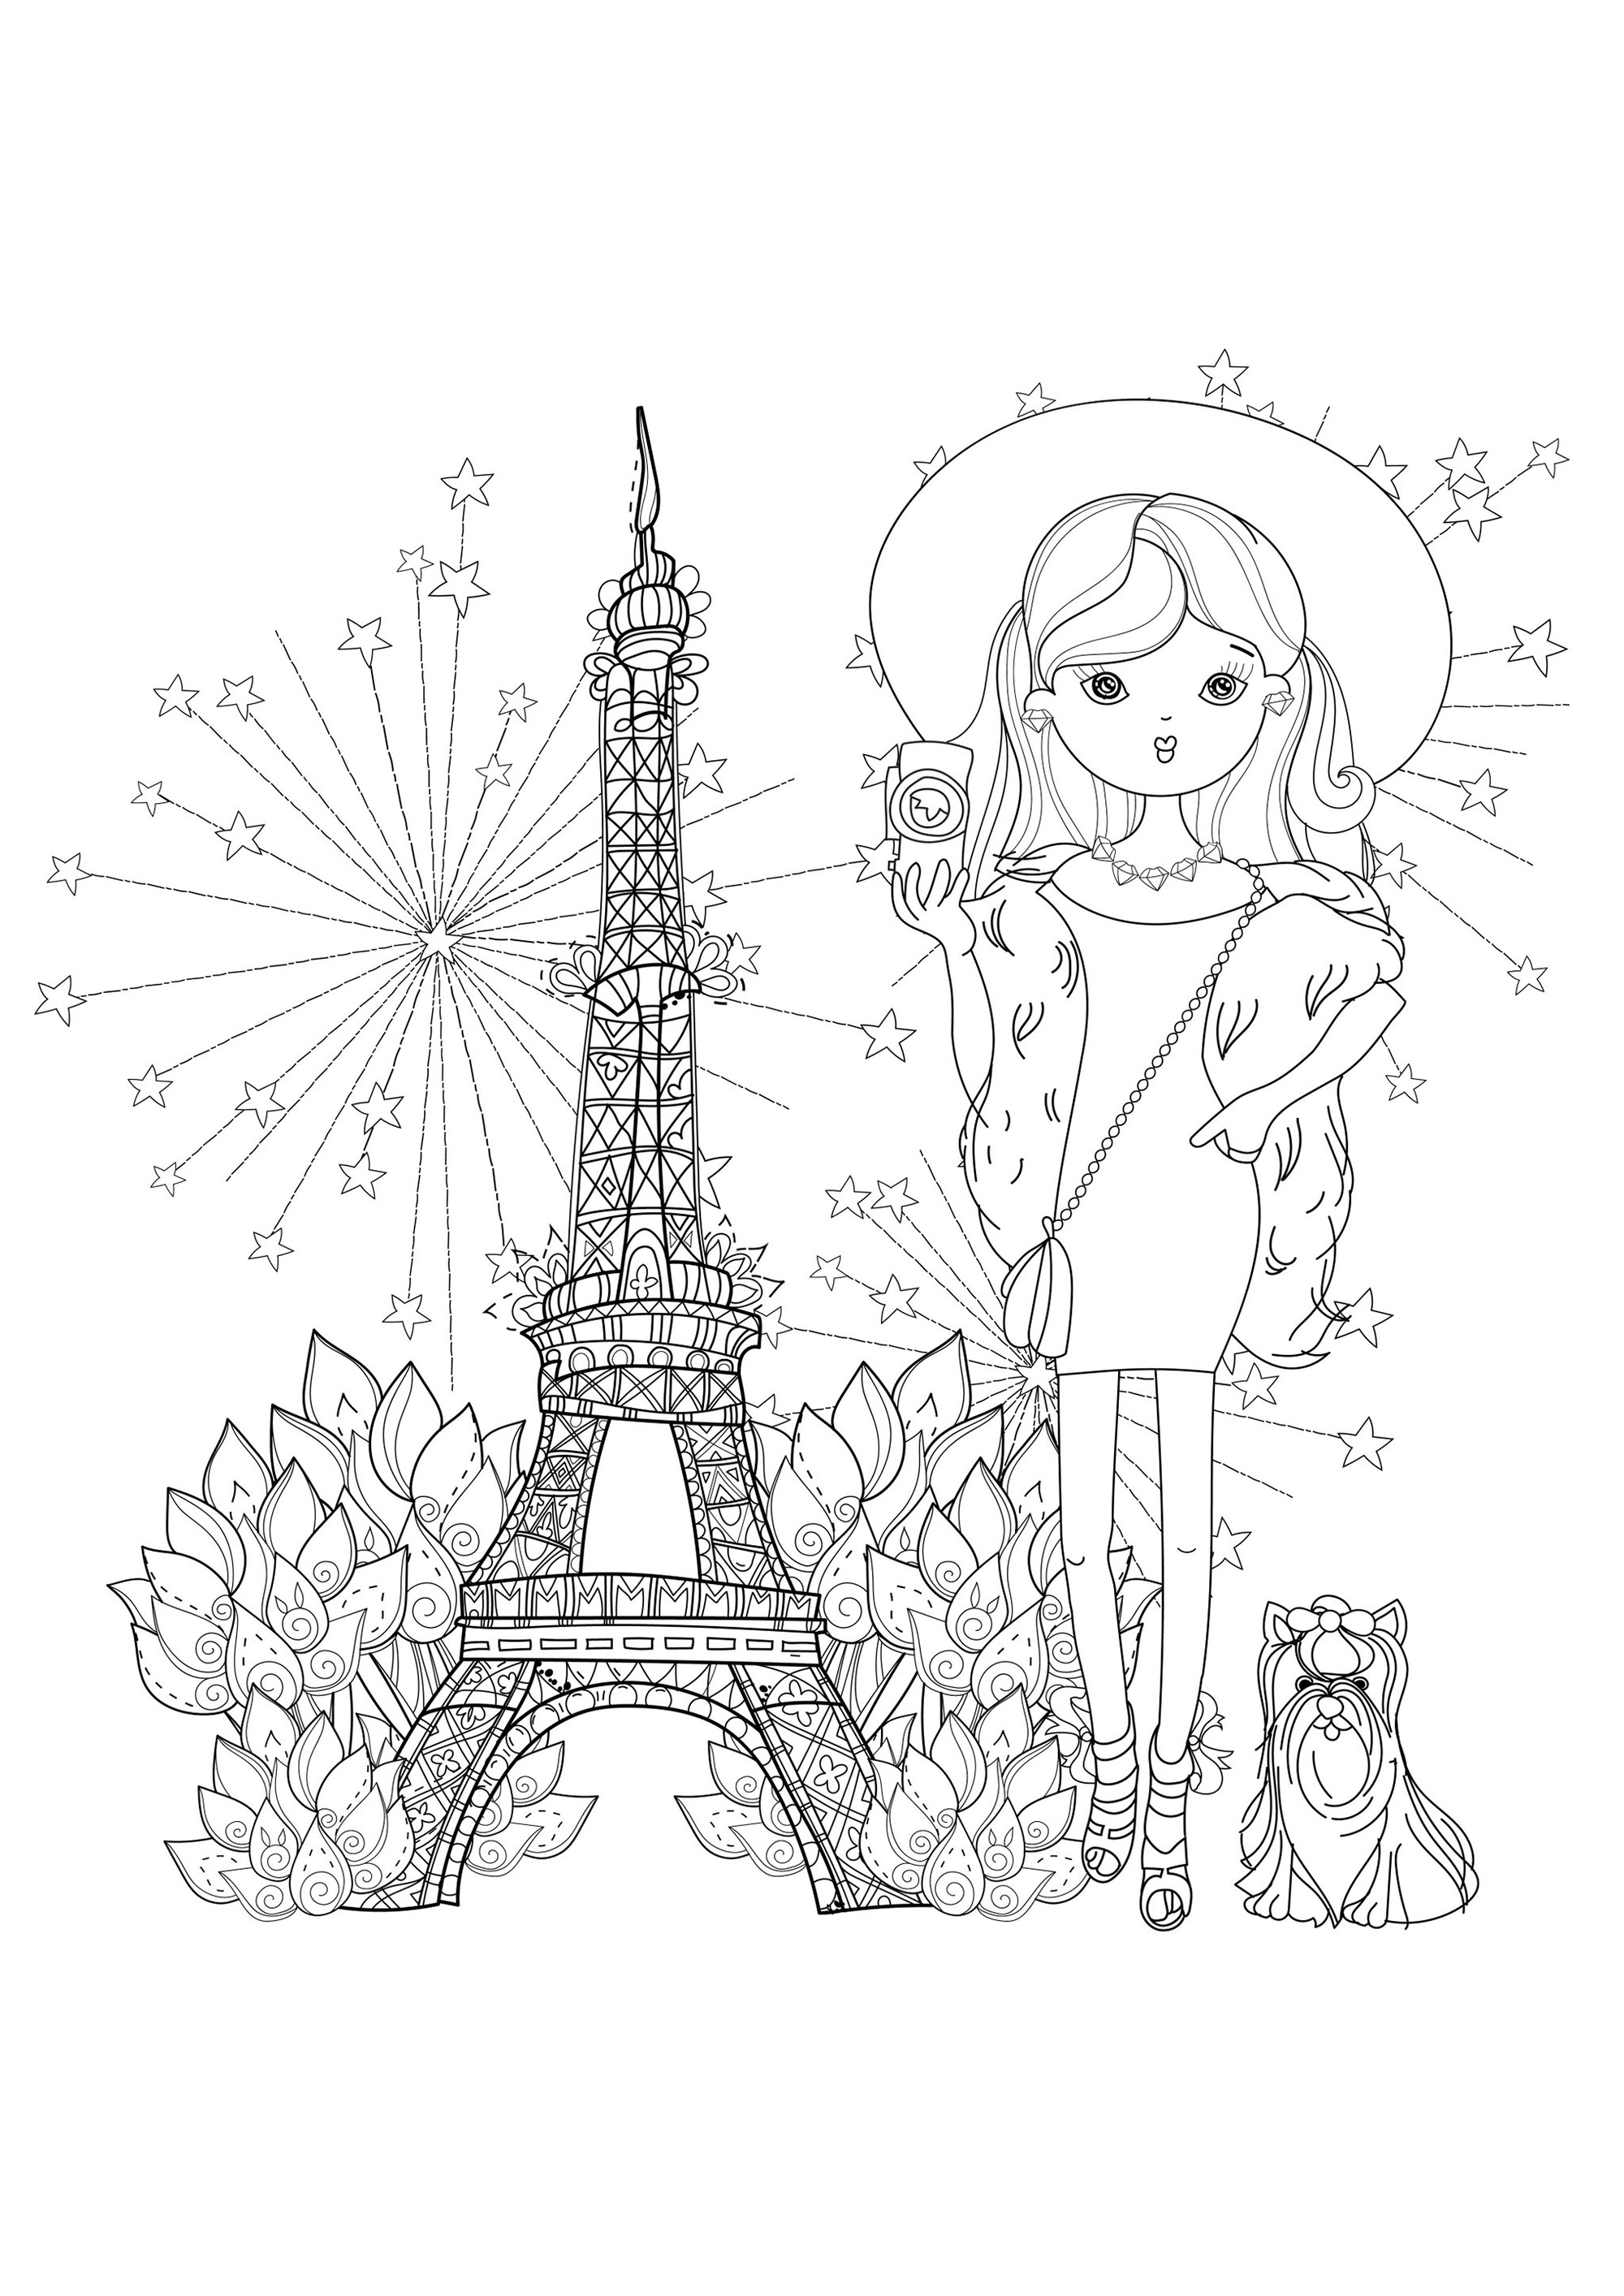 Jeune et jolie voyageuse accompagnée de son petit chien, avec la Tour Eiffel en arrière-plan. Construite en 1889 pour l'Exposition Universelle, la Tour Eiffel est devenue le principal symbole de Paris, et même de la France.